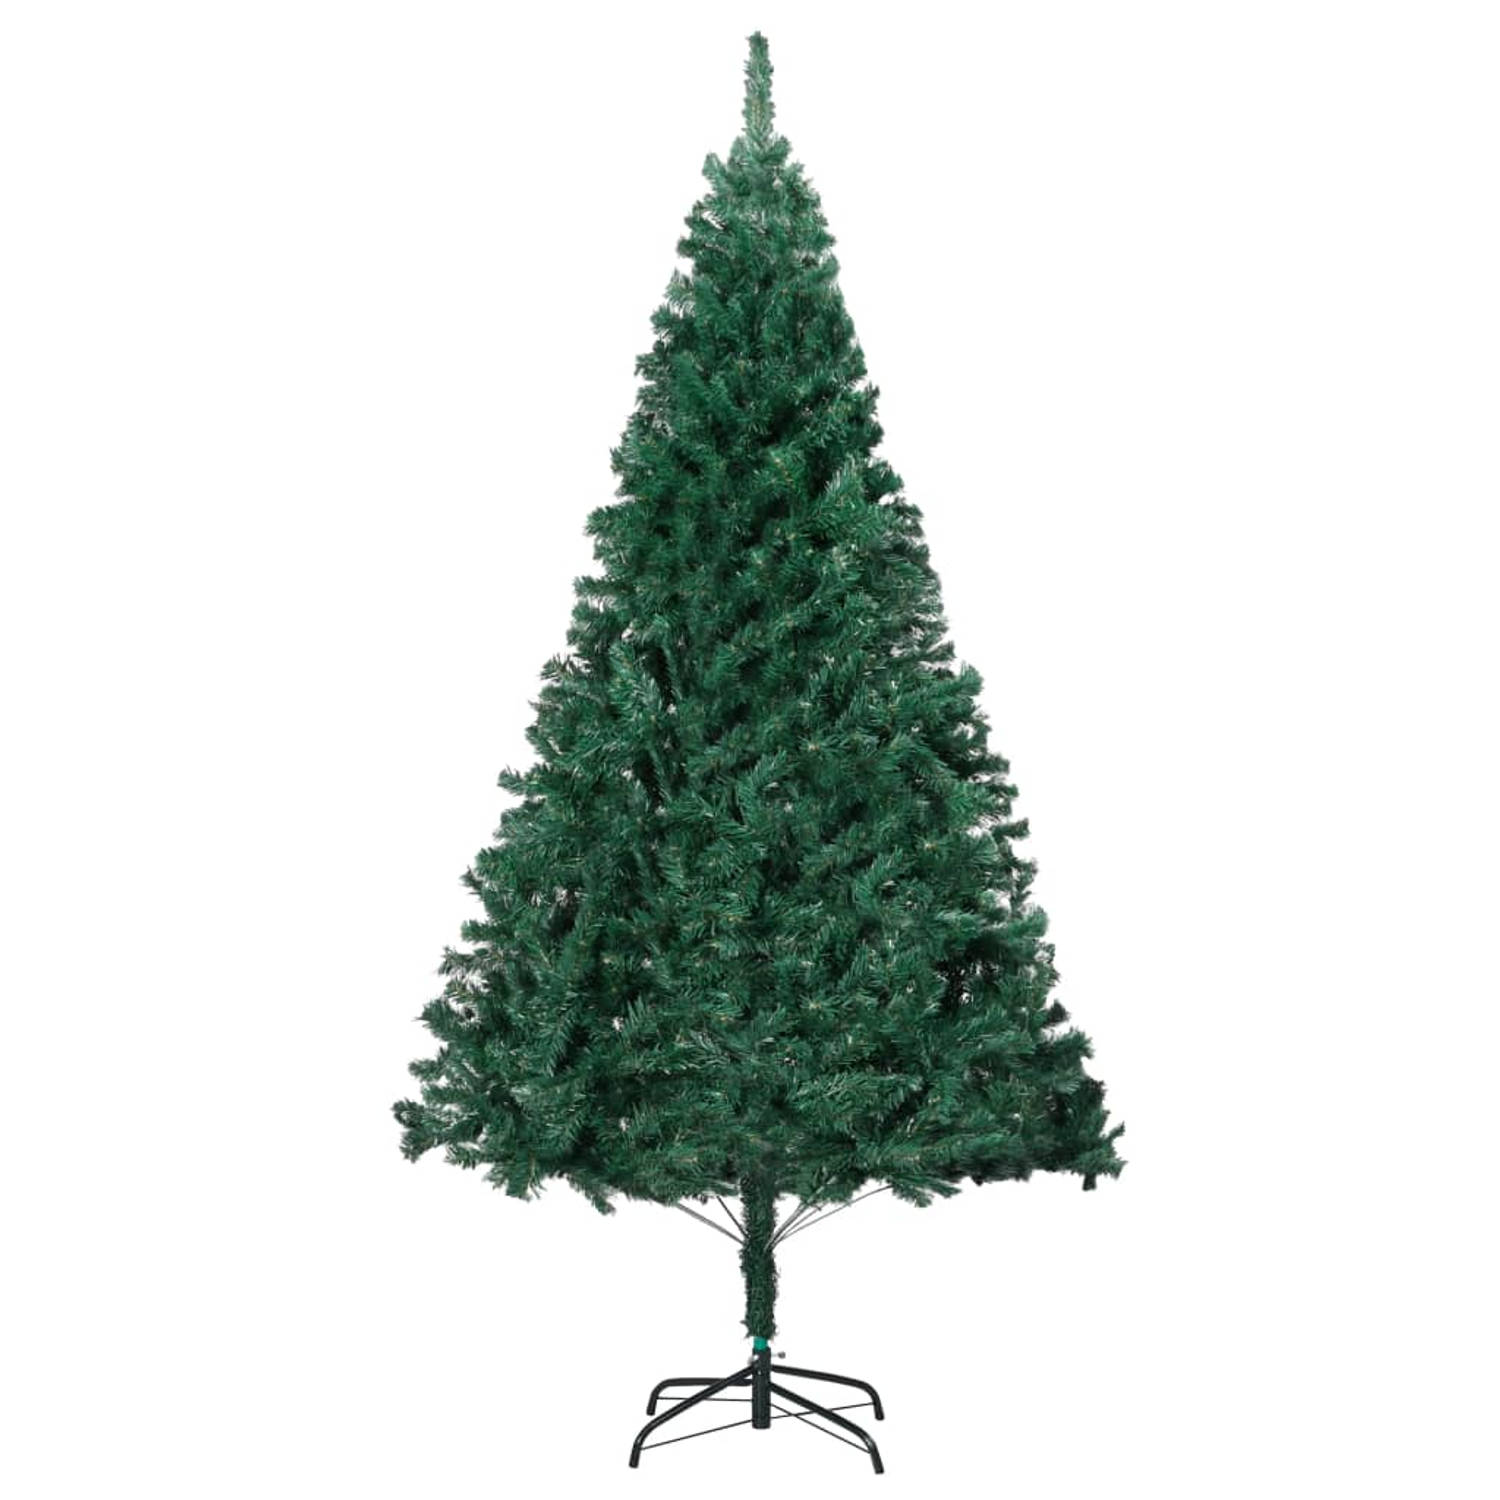 The Living Store Kunstkerstboom met dikke takken 150 cm PVC groen - Decoratieve kerstboom